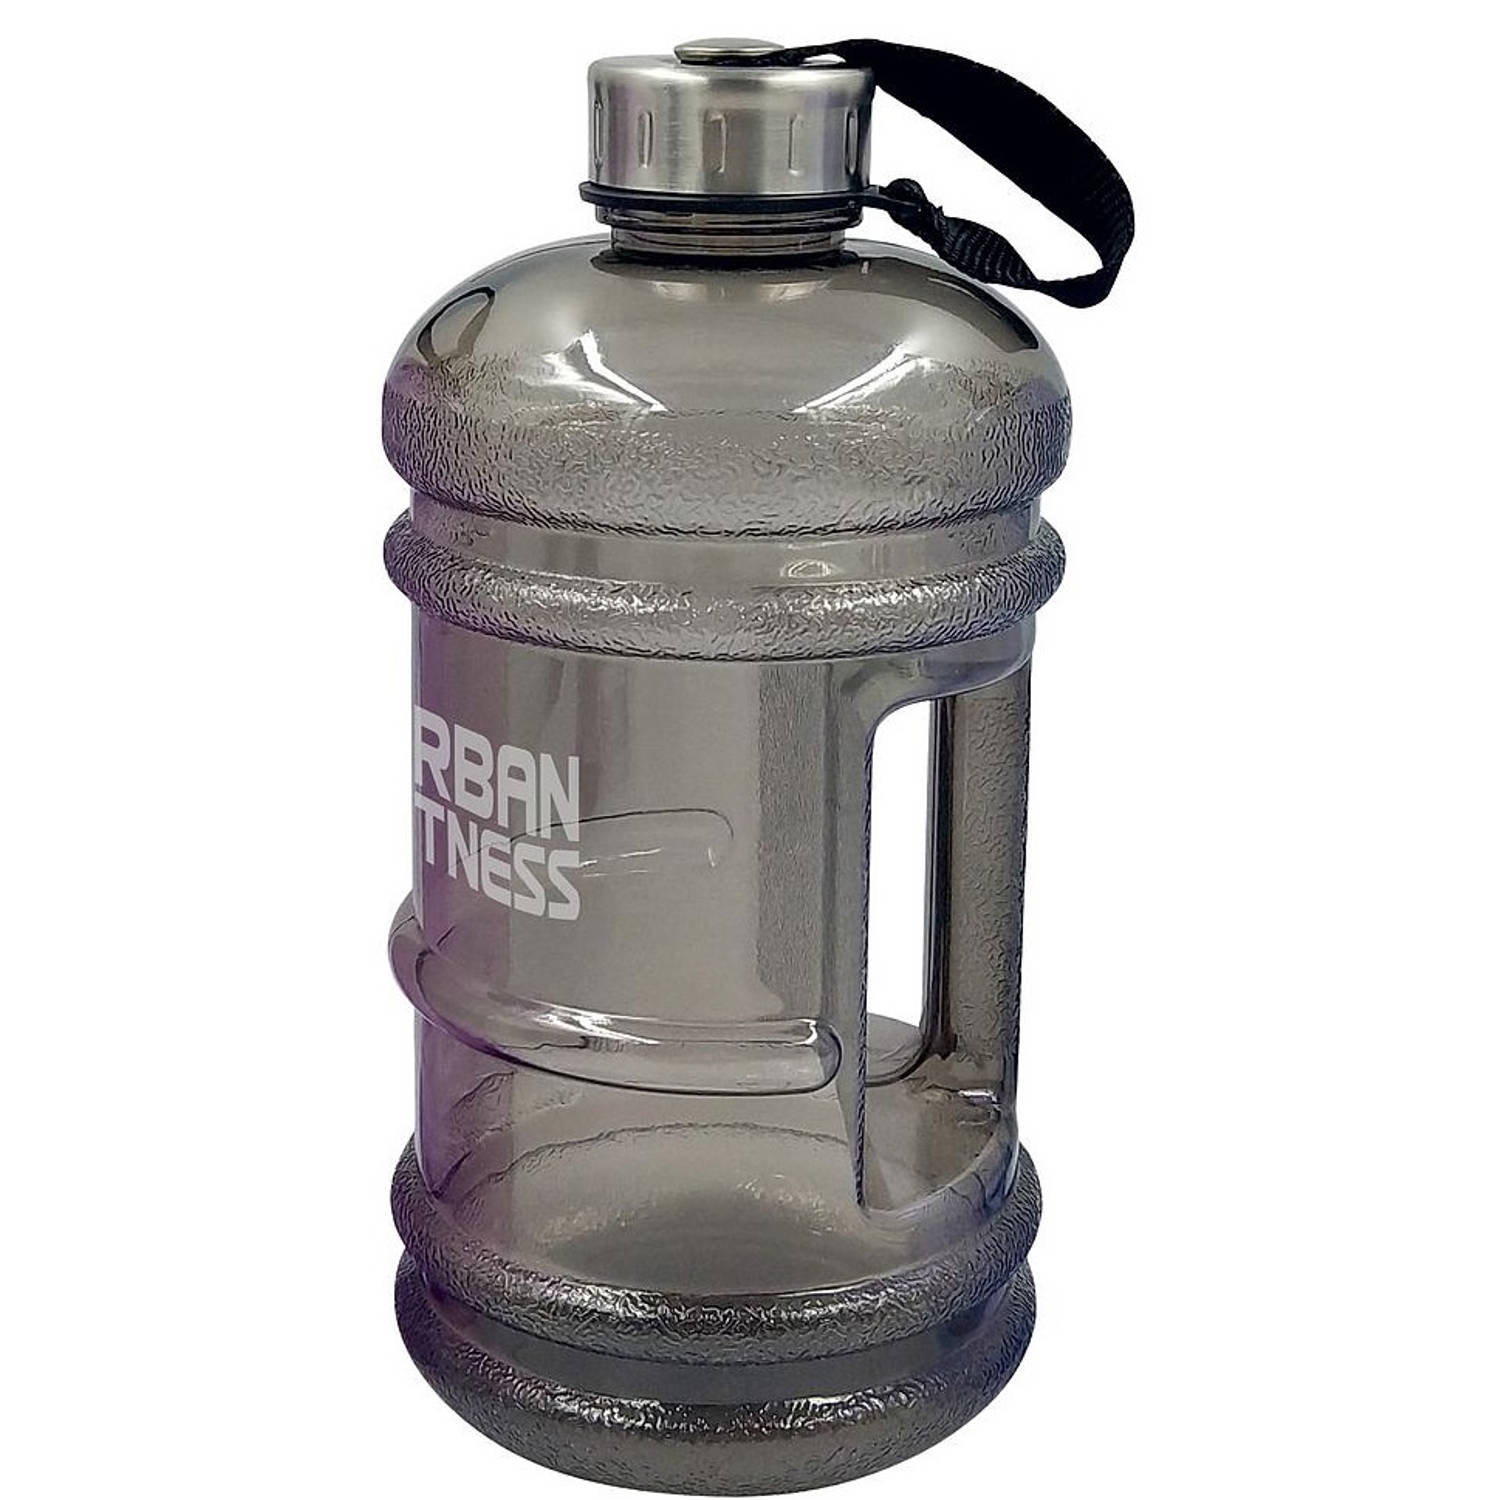 Goot Ja industrie Urban Fitness waterfles 2,2 liter grijs | Blokker